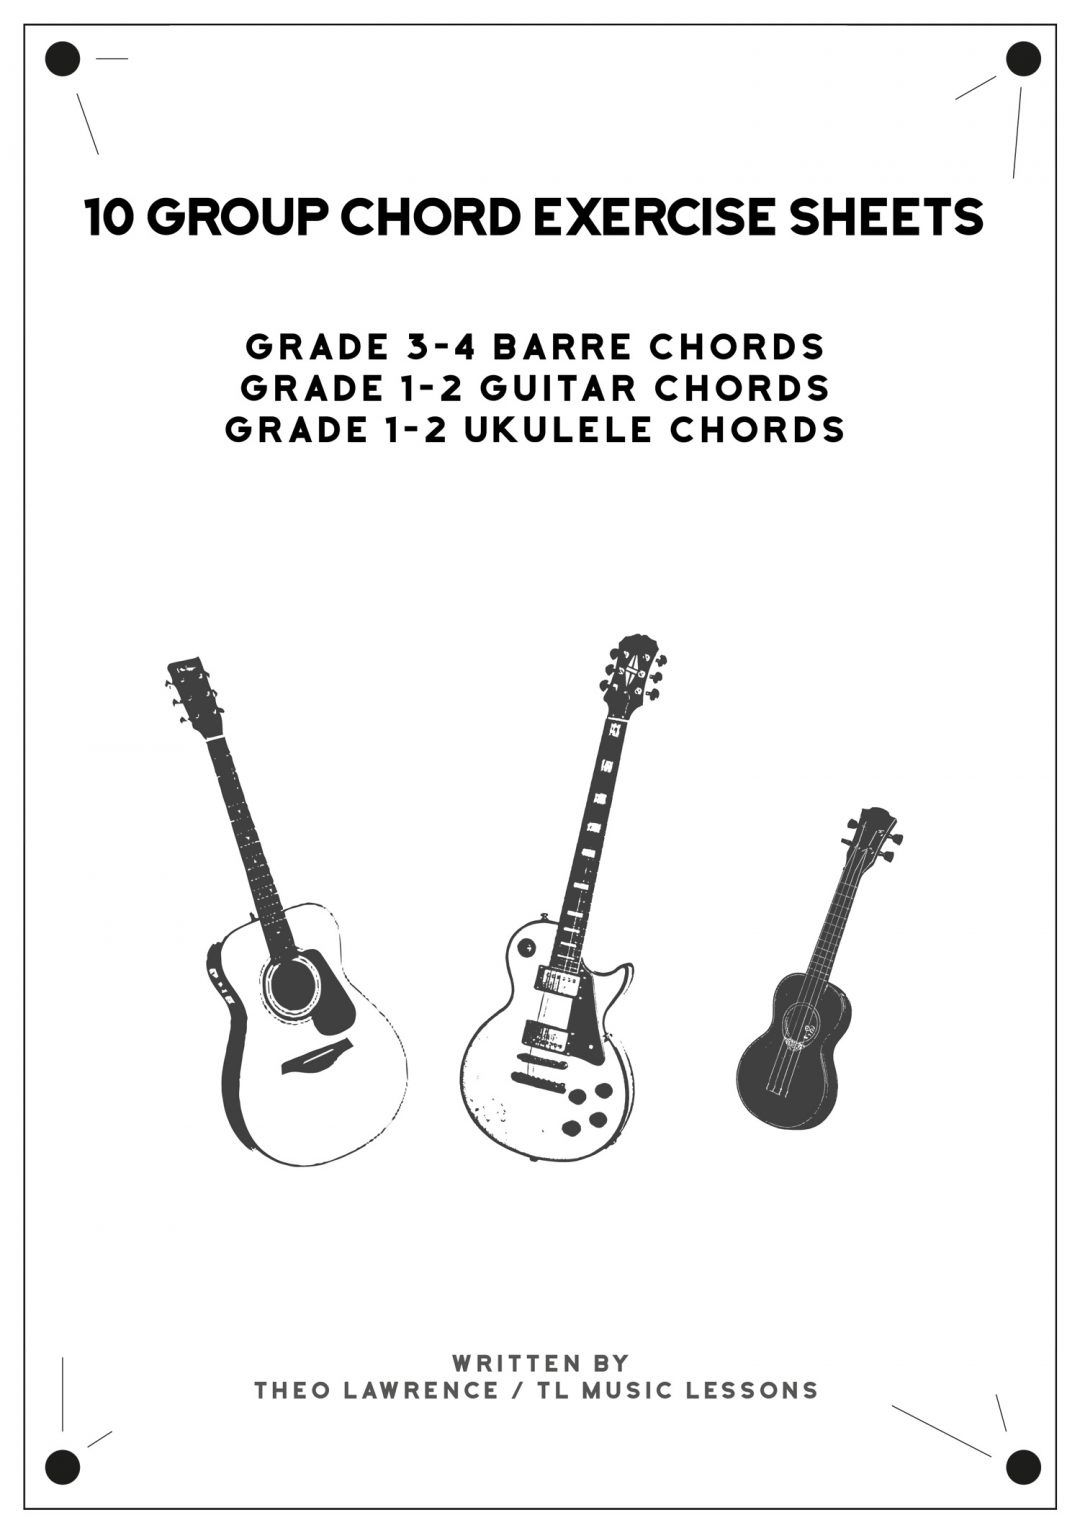 (PREMIUM) – 10 Group Chord Exercise Sheets – 3 Ebooks – Guitar & Ukulele